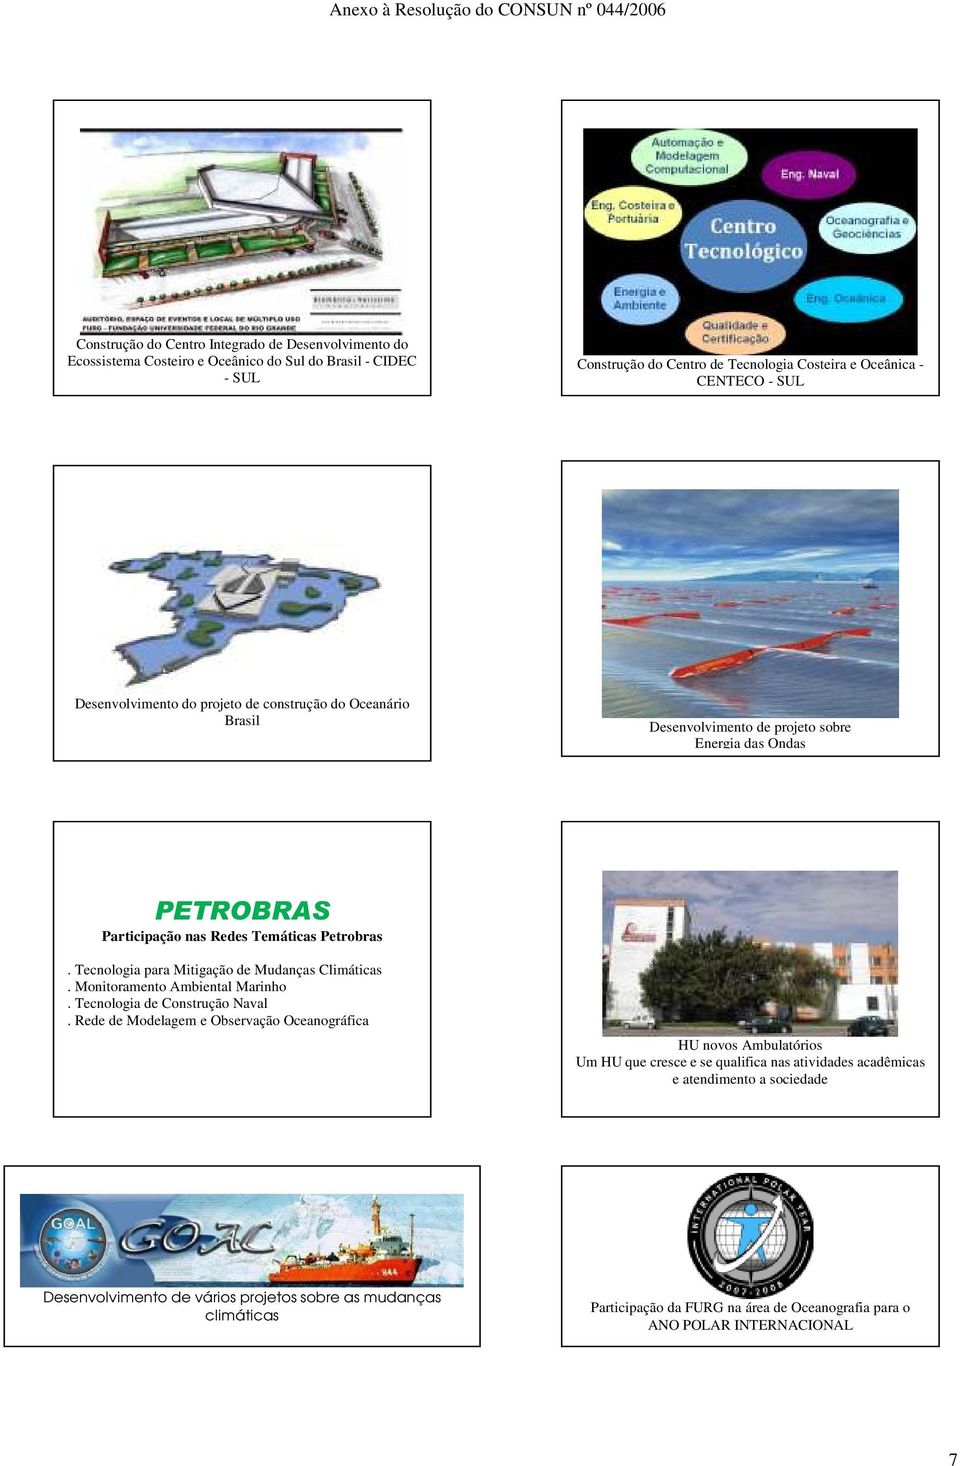 Tecnologia para Mitigação de Mudanças Climáticas. Monitoramento Ambiental Marinho. Tecnologia de Construção Naval.